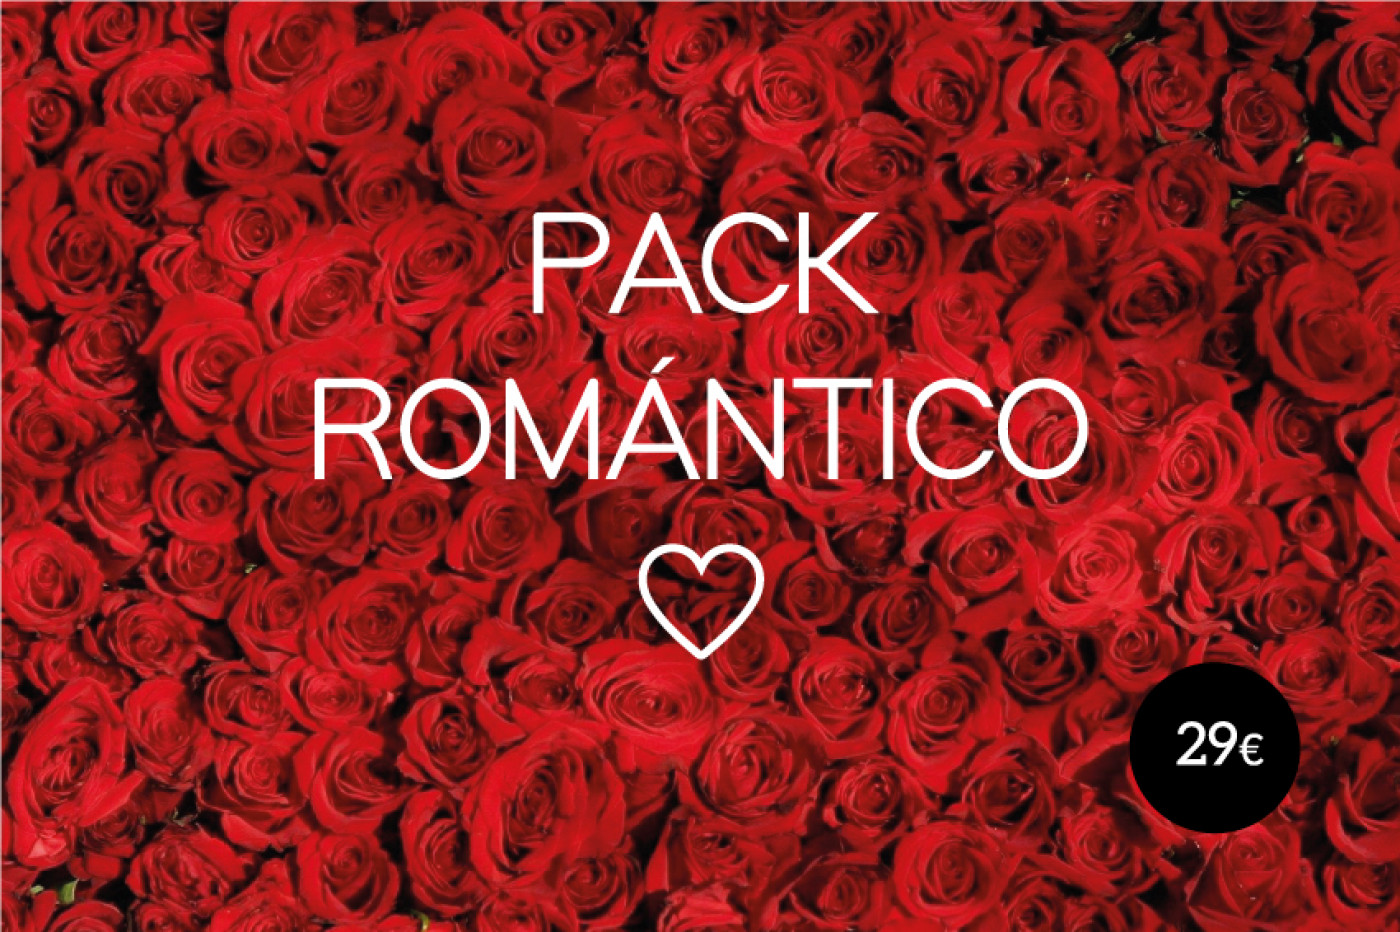  Pack Romántico 1